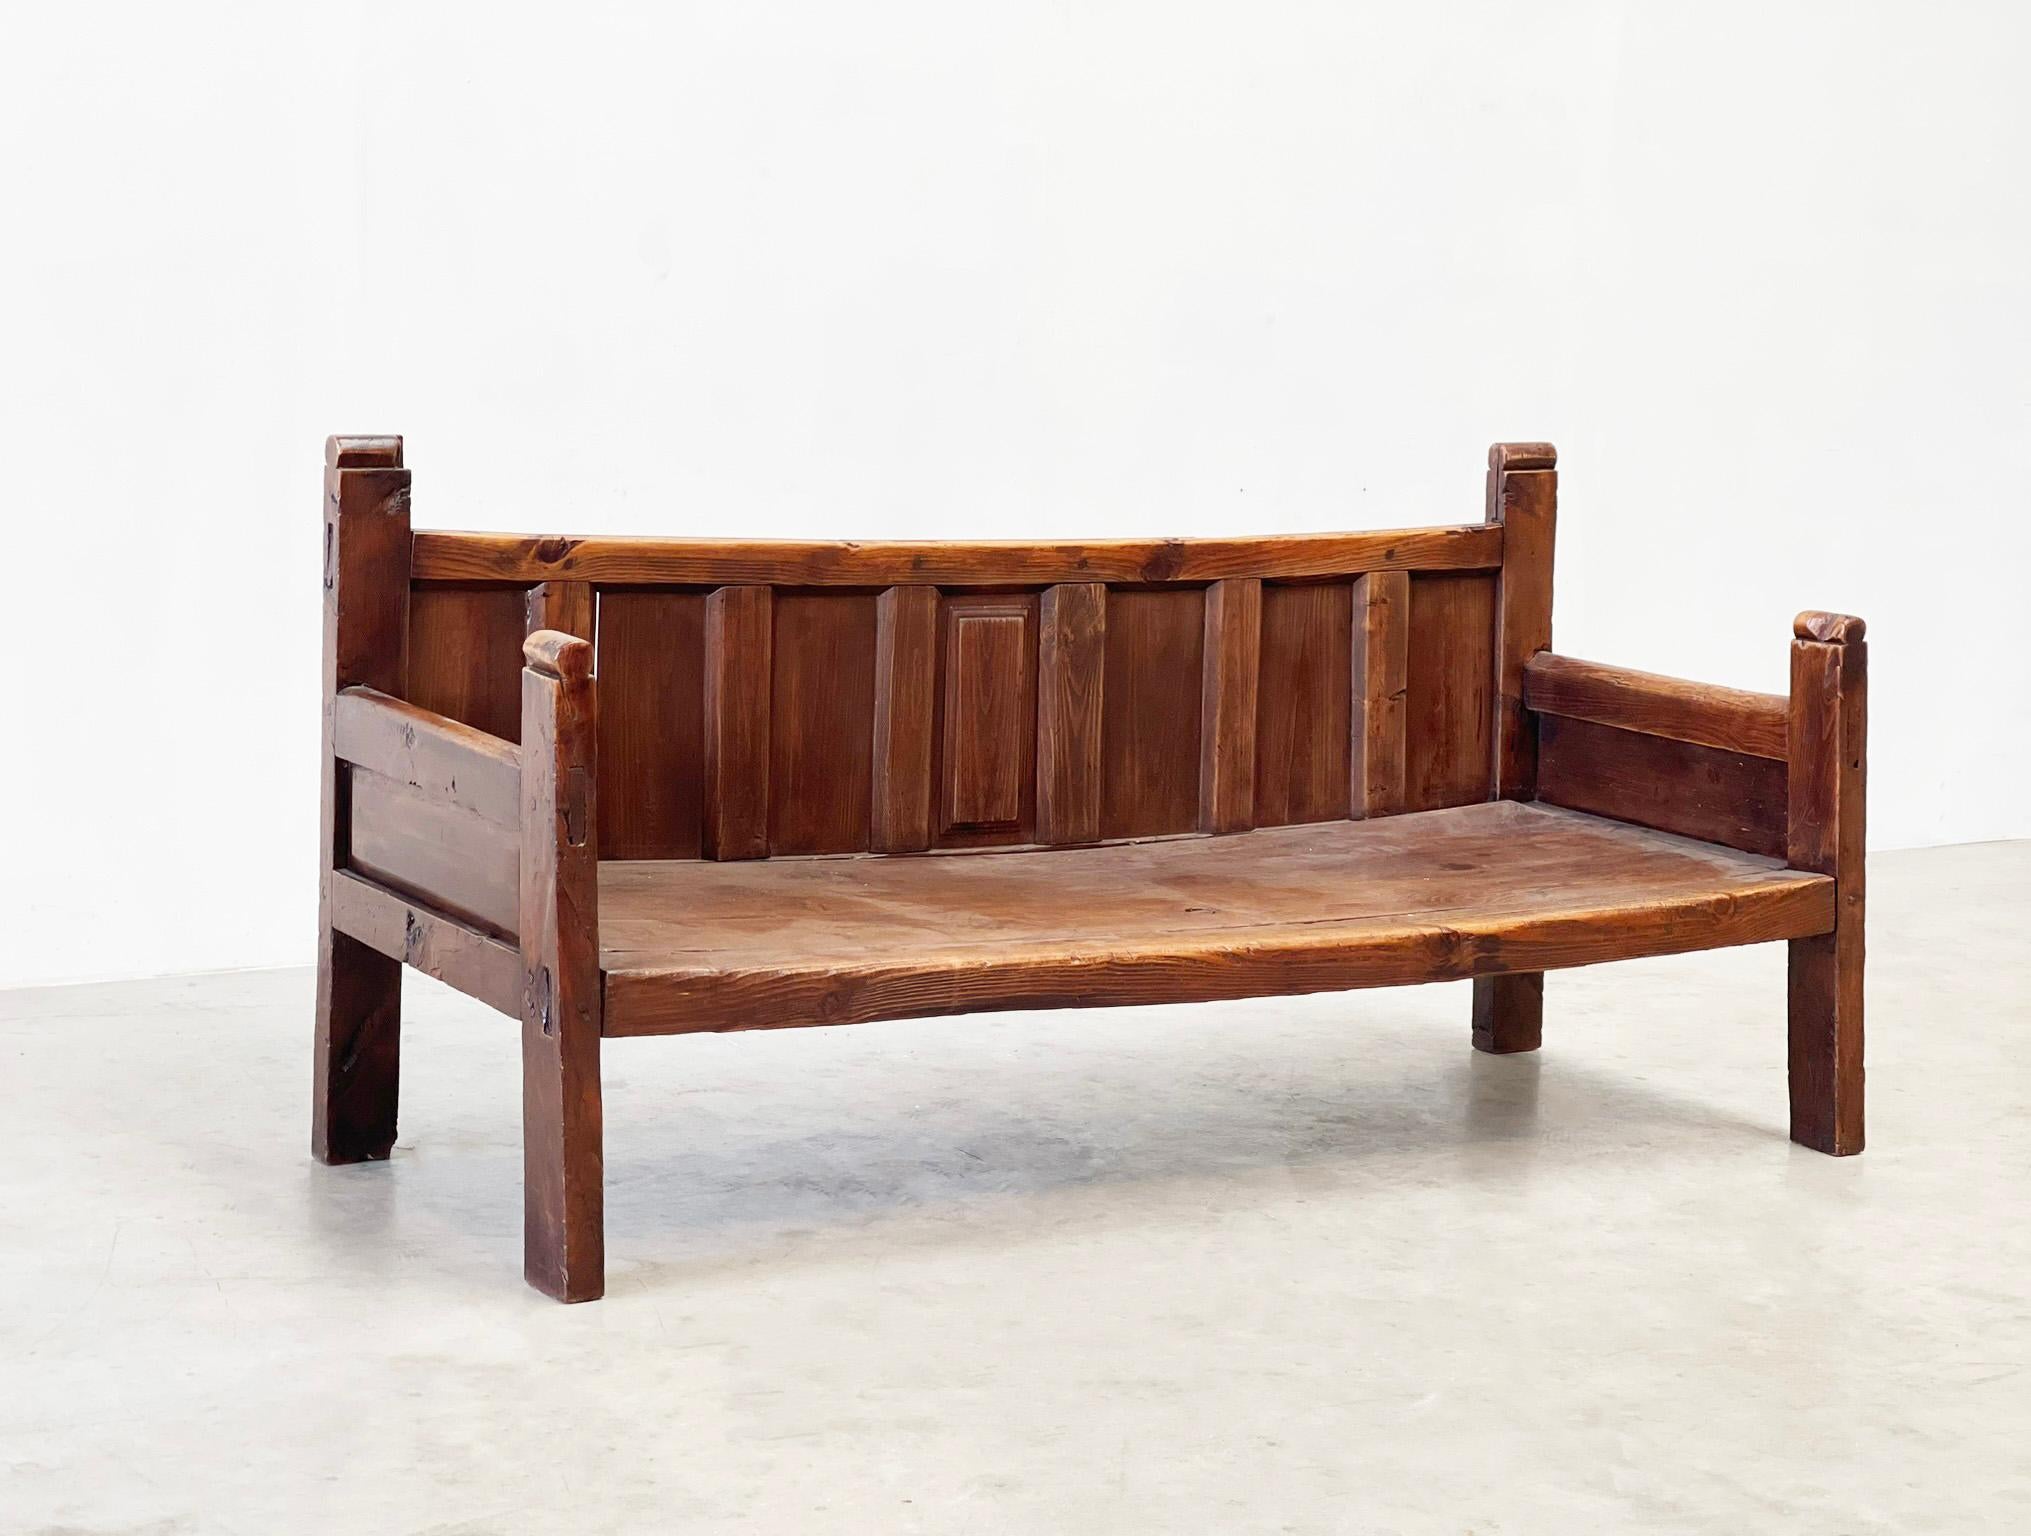 Banc espagnol du début du 20e siècle
Un style de plus en plus populaire. Comme celui-ci : meubles espagnols rustiques du début du 20e siècle. C'est un exemple parfait.

Ce banc a été fabriqué en Espagne à la fin du XIXe siècle et au début du XXe